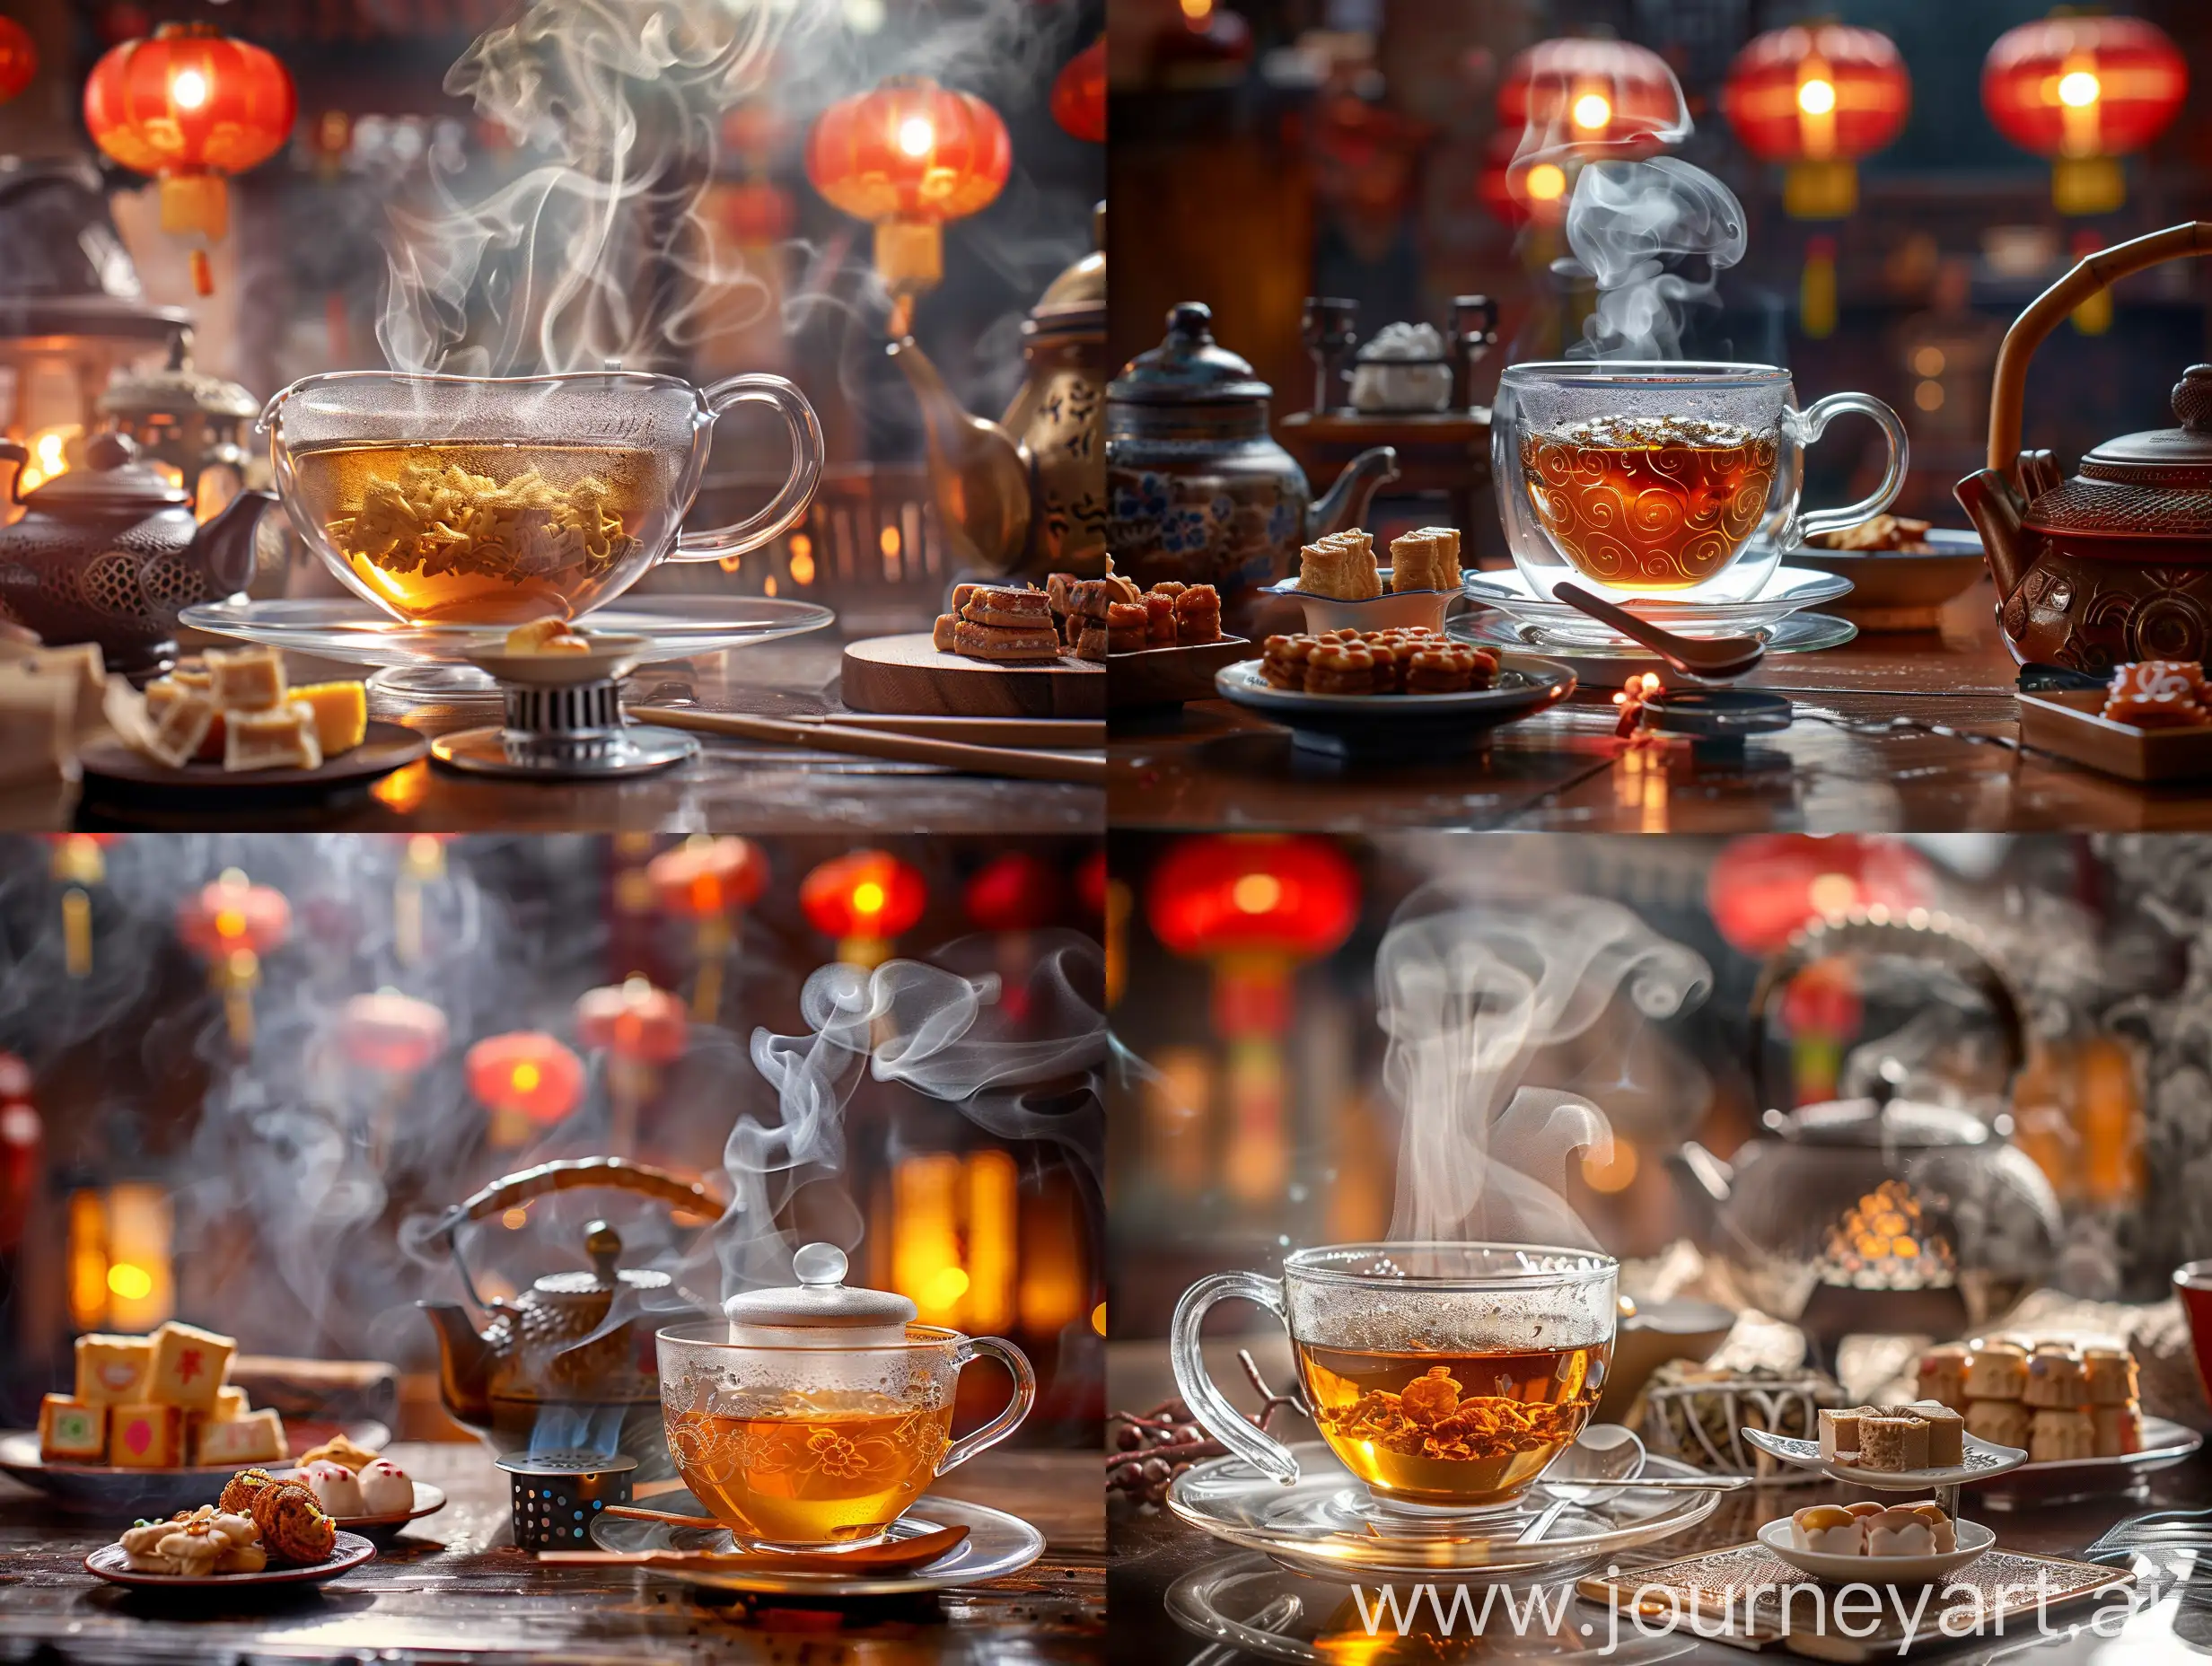 чайная церемония, прозрачная чайная чашечка, чай в чашке, идет пар от чая, ложечка и чашка в китайском стиле, на блюдечке сладости, заварочный чайник , под ним малеьнкая горелка для разогрева, на фоне китайские фонарики... , все детали в резкости